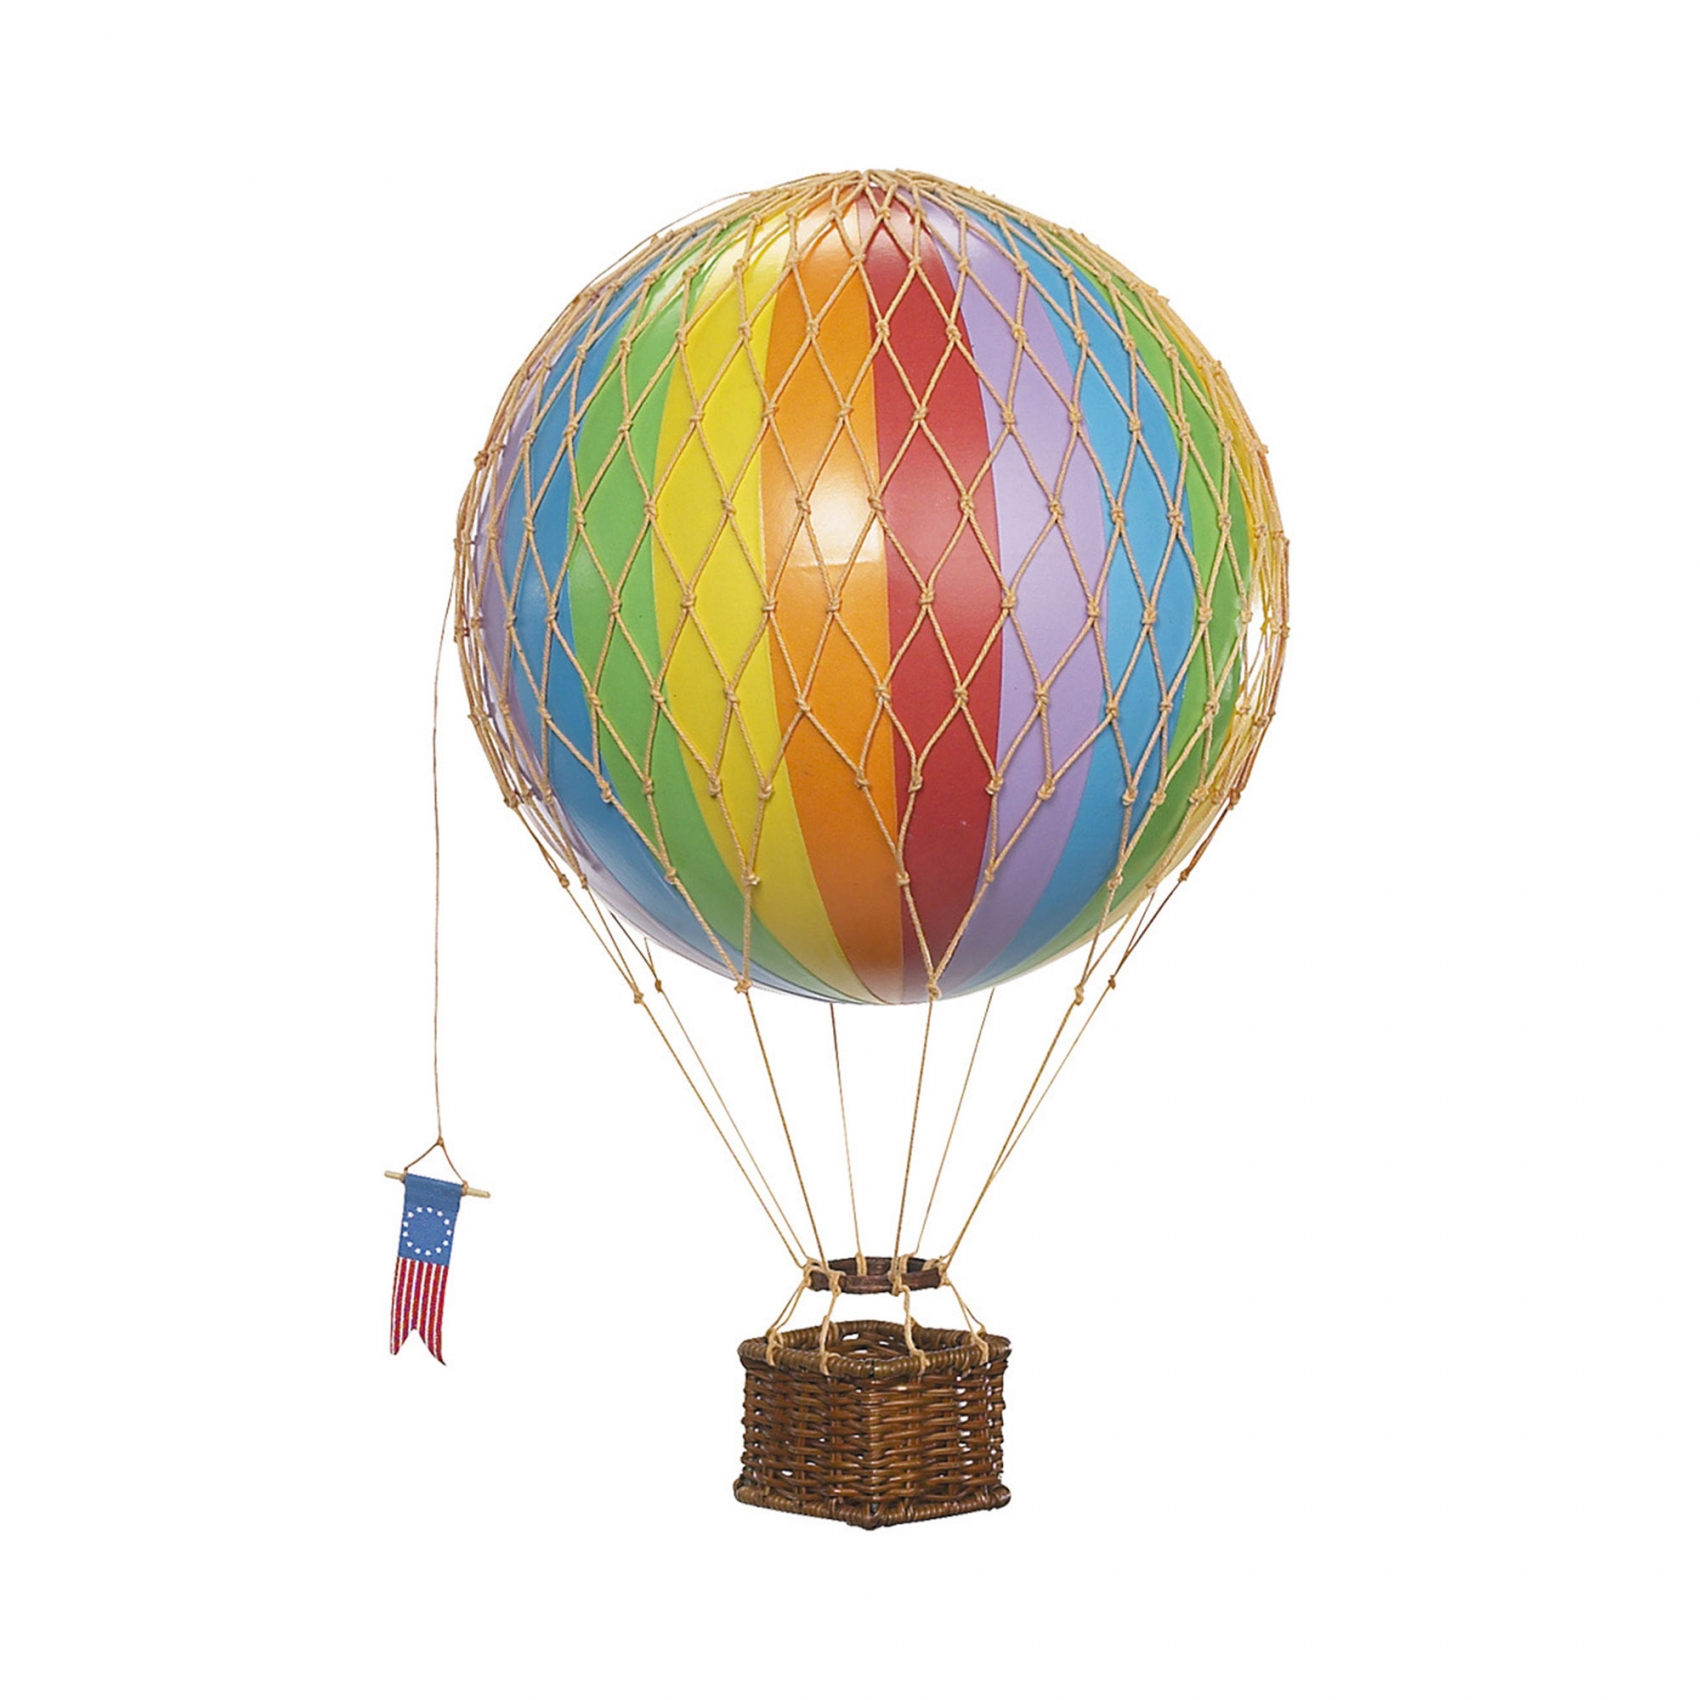 Купить воздушный шар 5. Воздушный шар с корзиной. Воздушный шар c корзинкой. Игрушечный воздушный шар с корзиной. Большой воздушный шар.